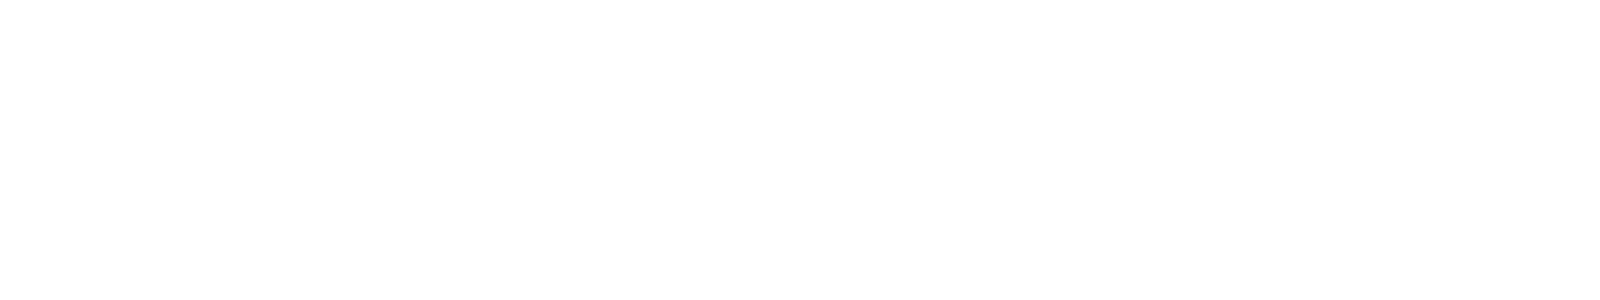 s7law logo biale2 - Platforma Medycyny Pracy